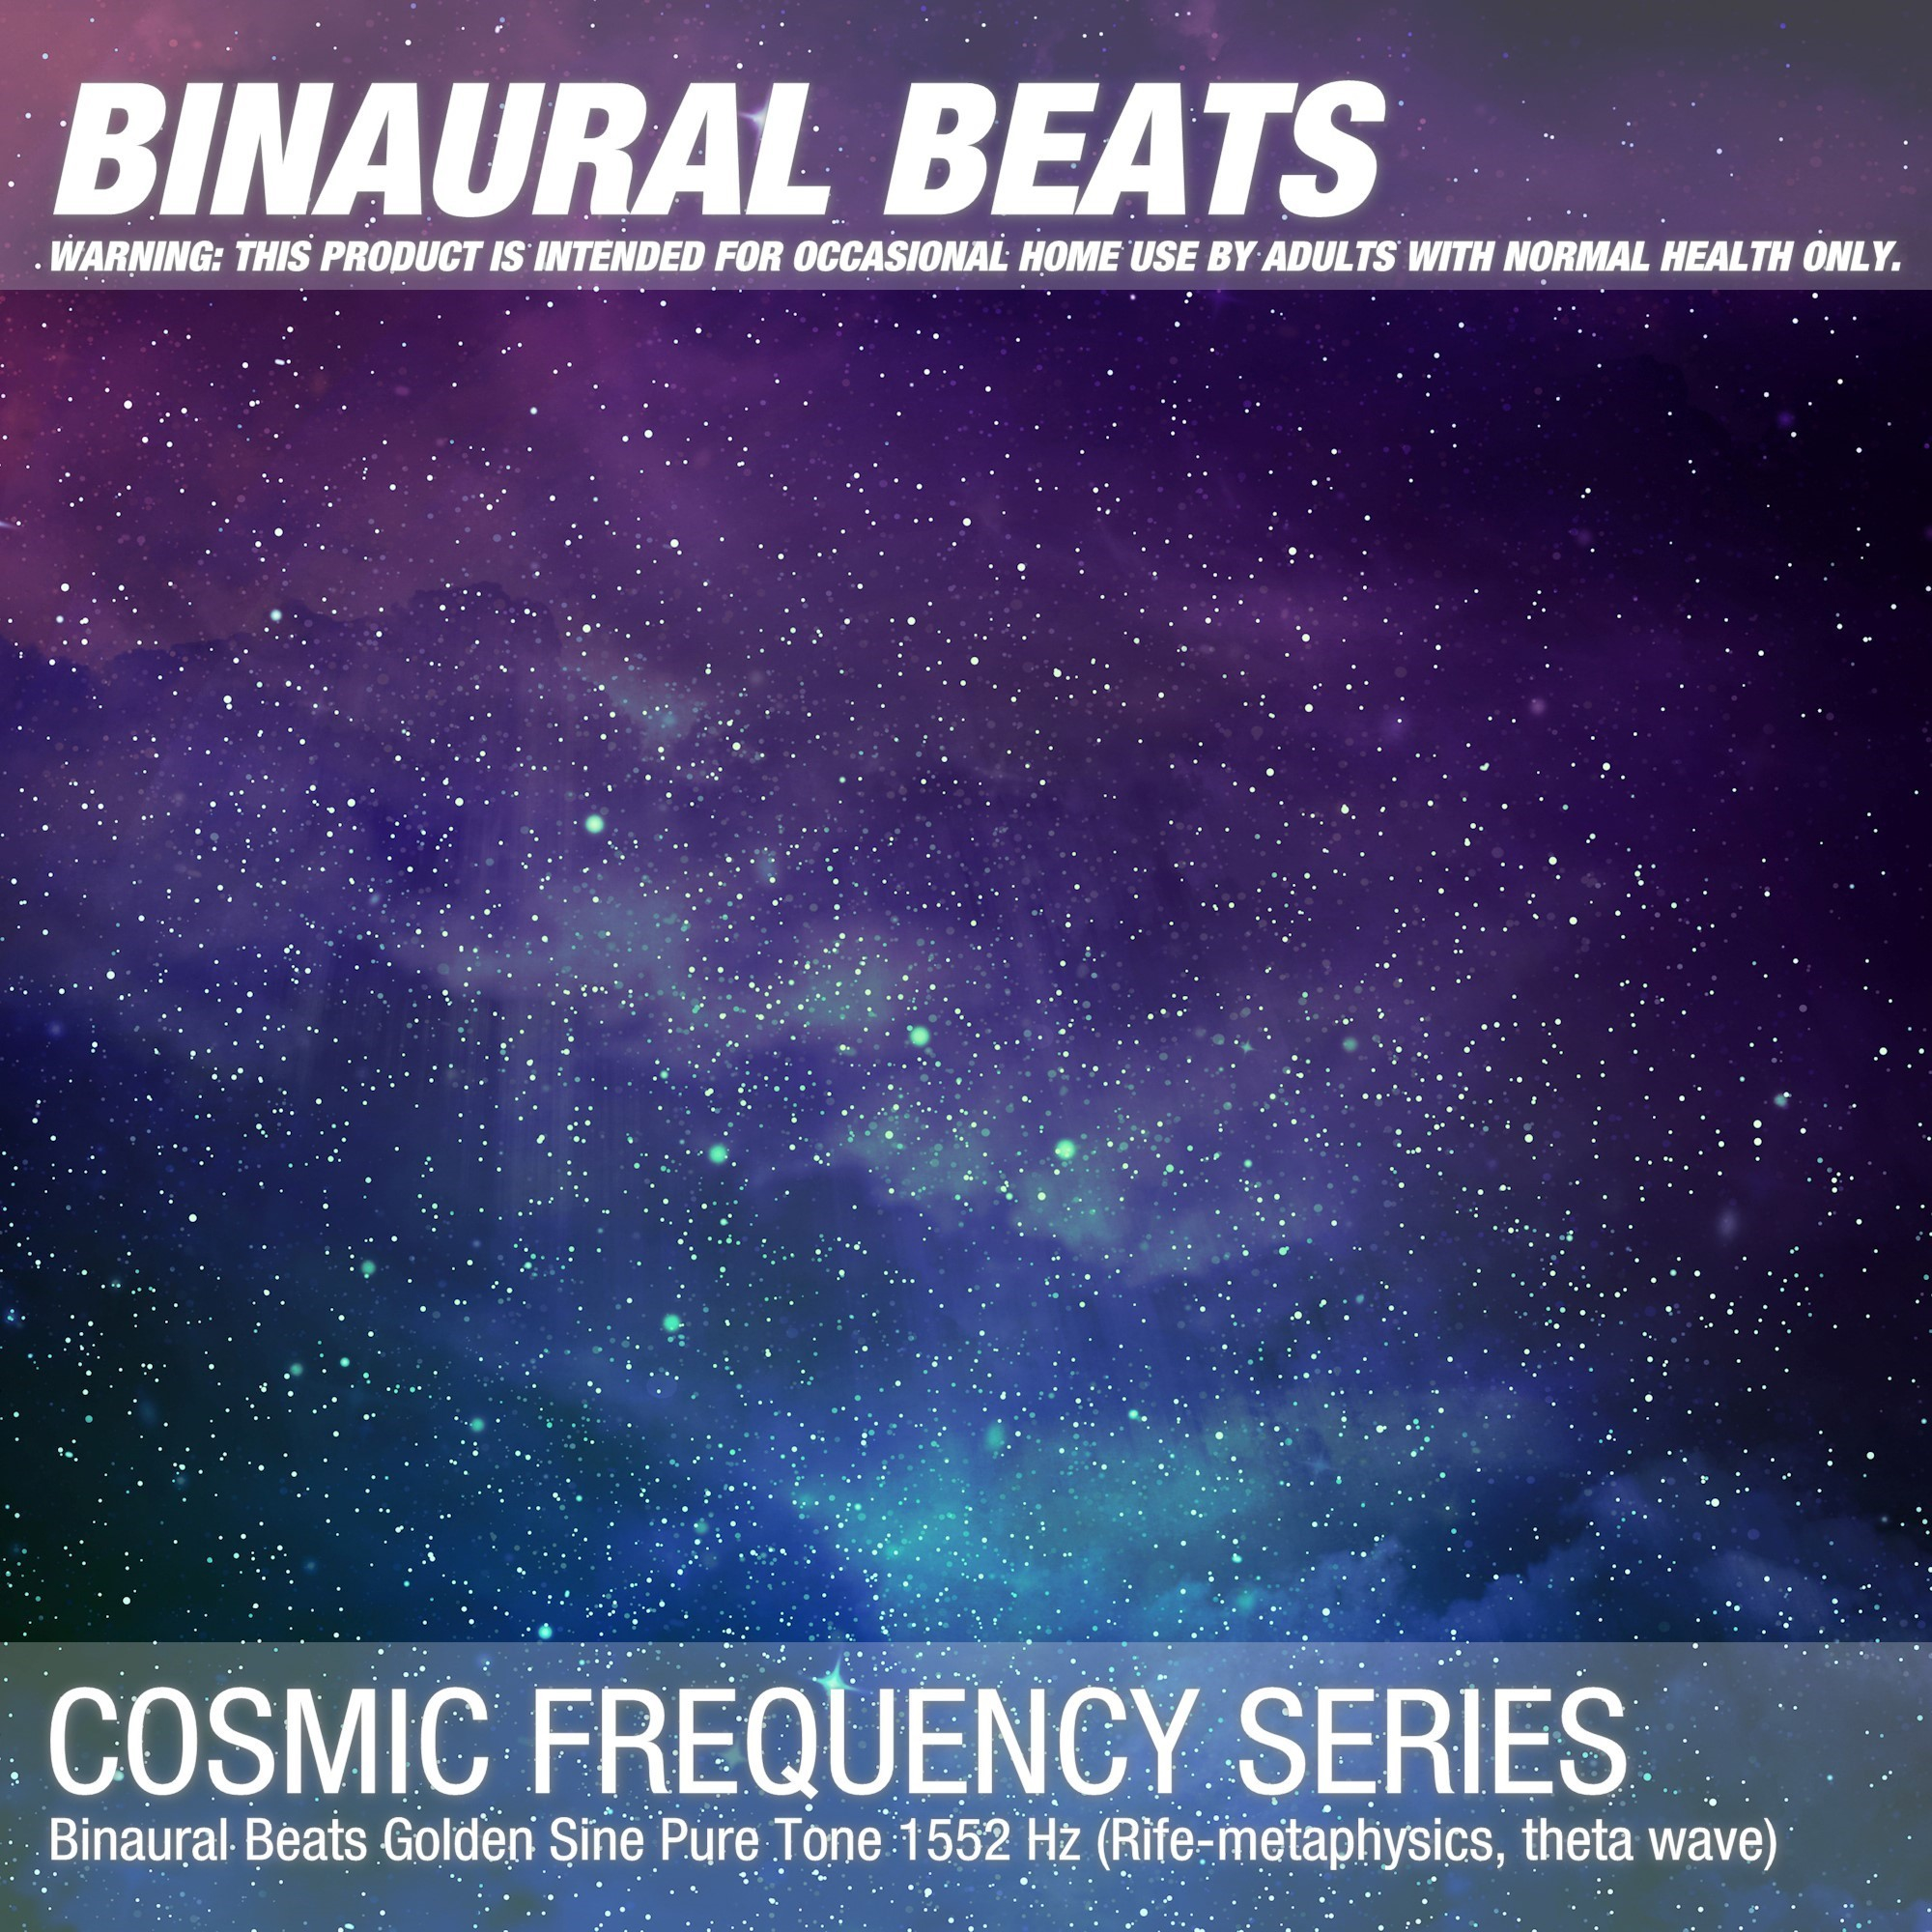 Binaural Beats Golden Sine Pure Tone 1552 Hz (Rife-metaphysics, theta wave)